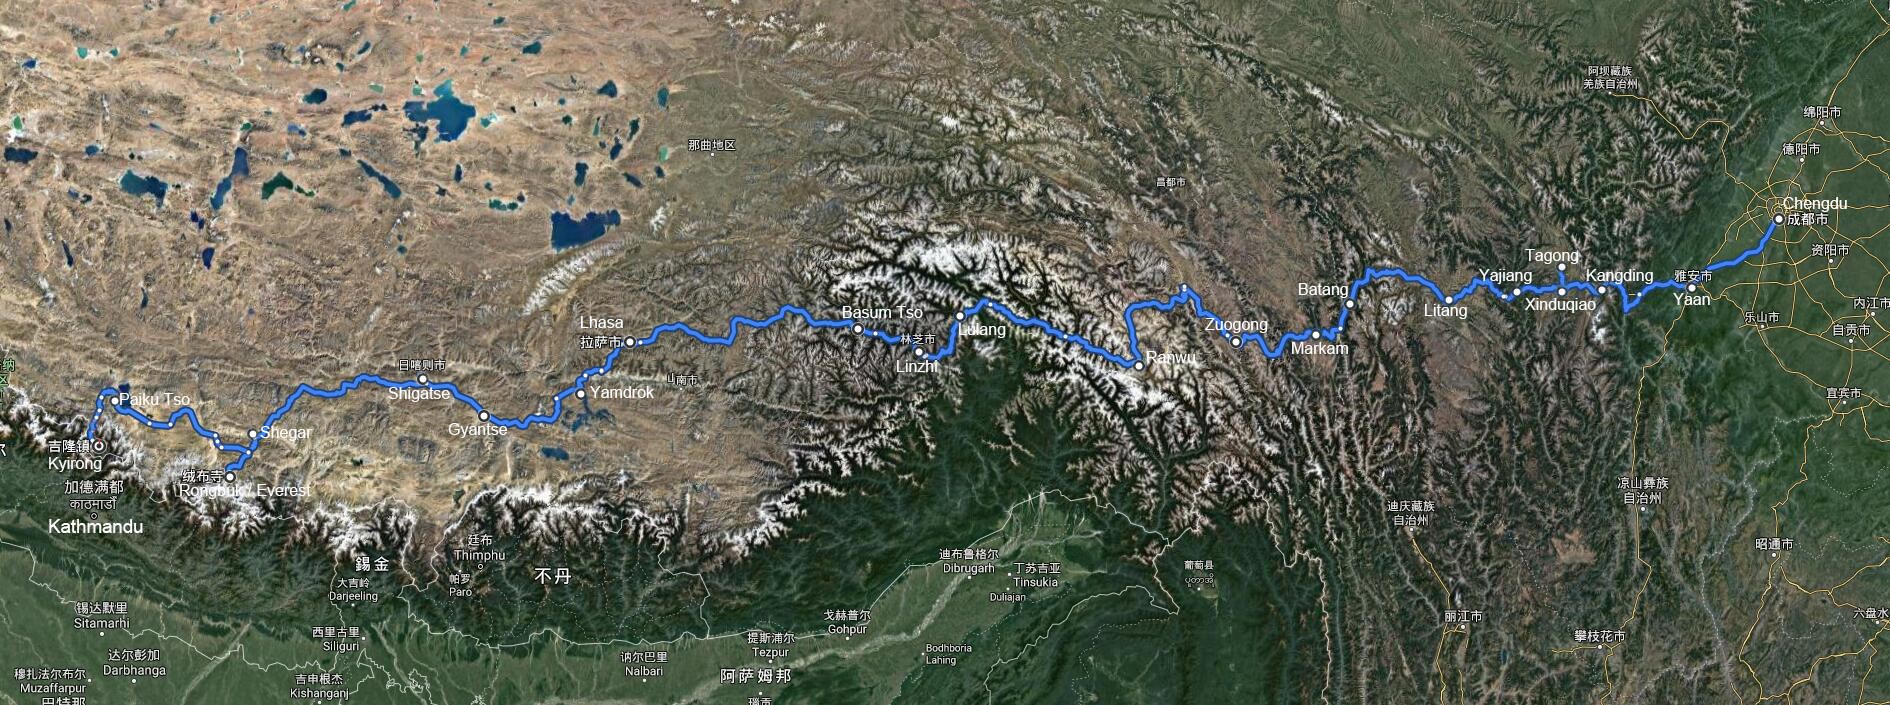 Viaggio via Terra dal Sichuan attraverso il Tibet al Nepal con l'Everest